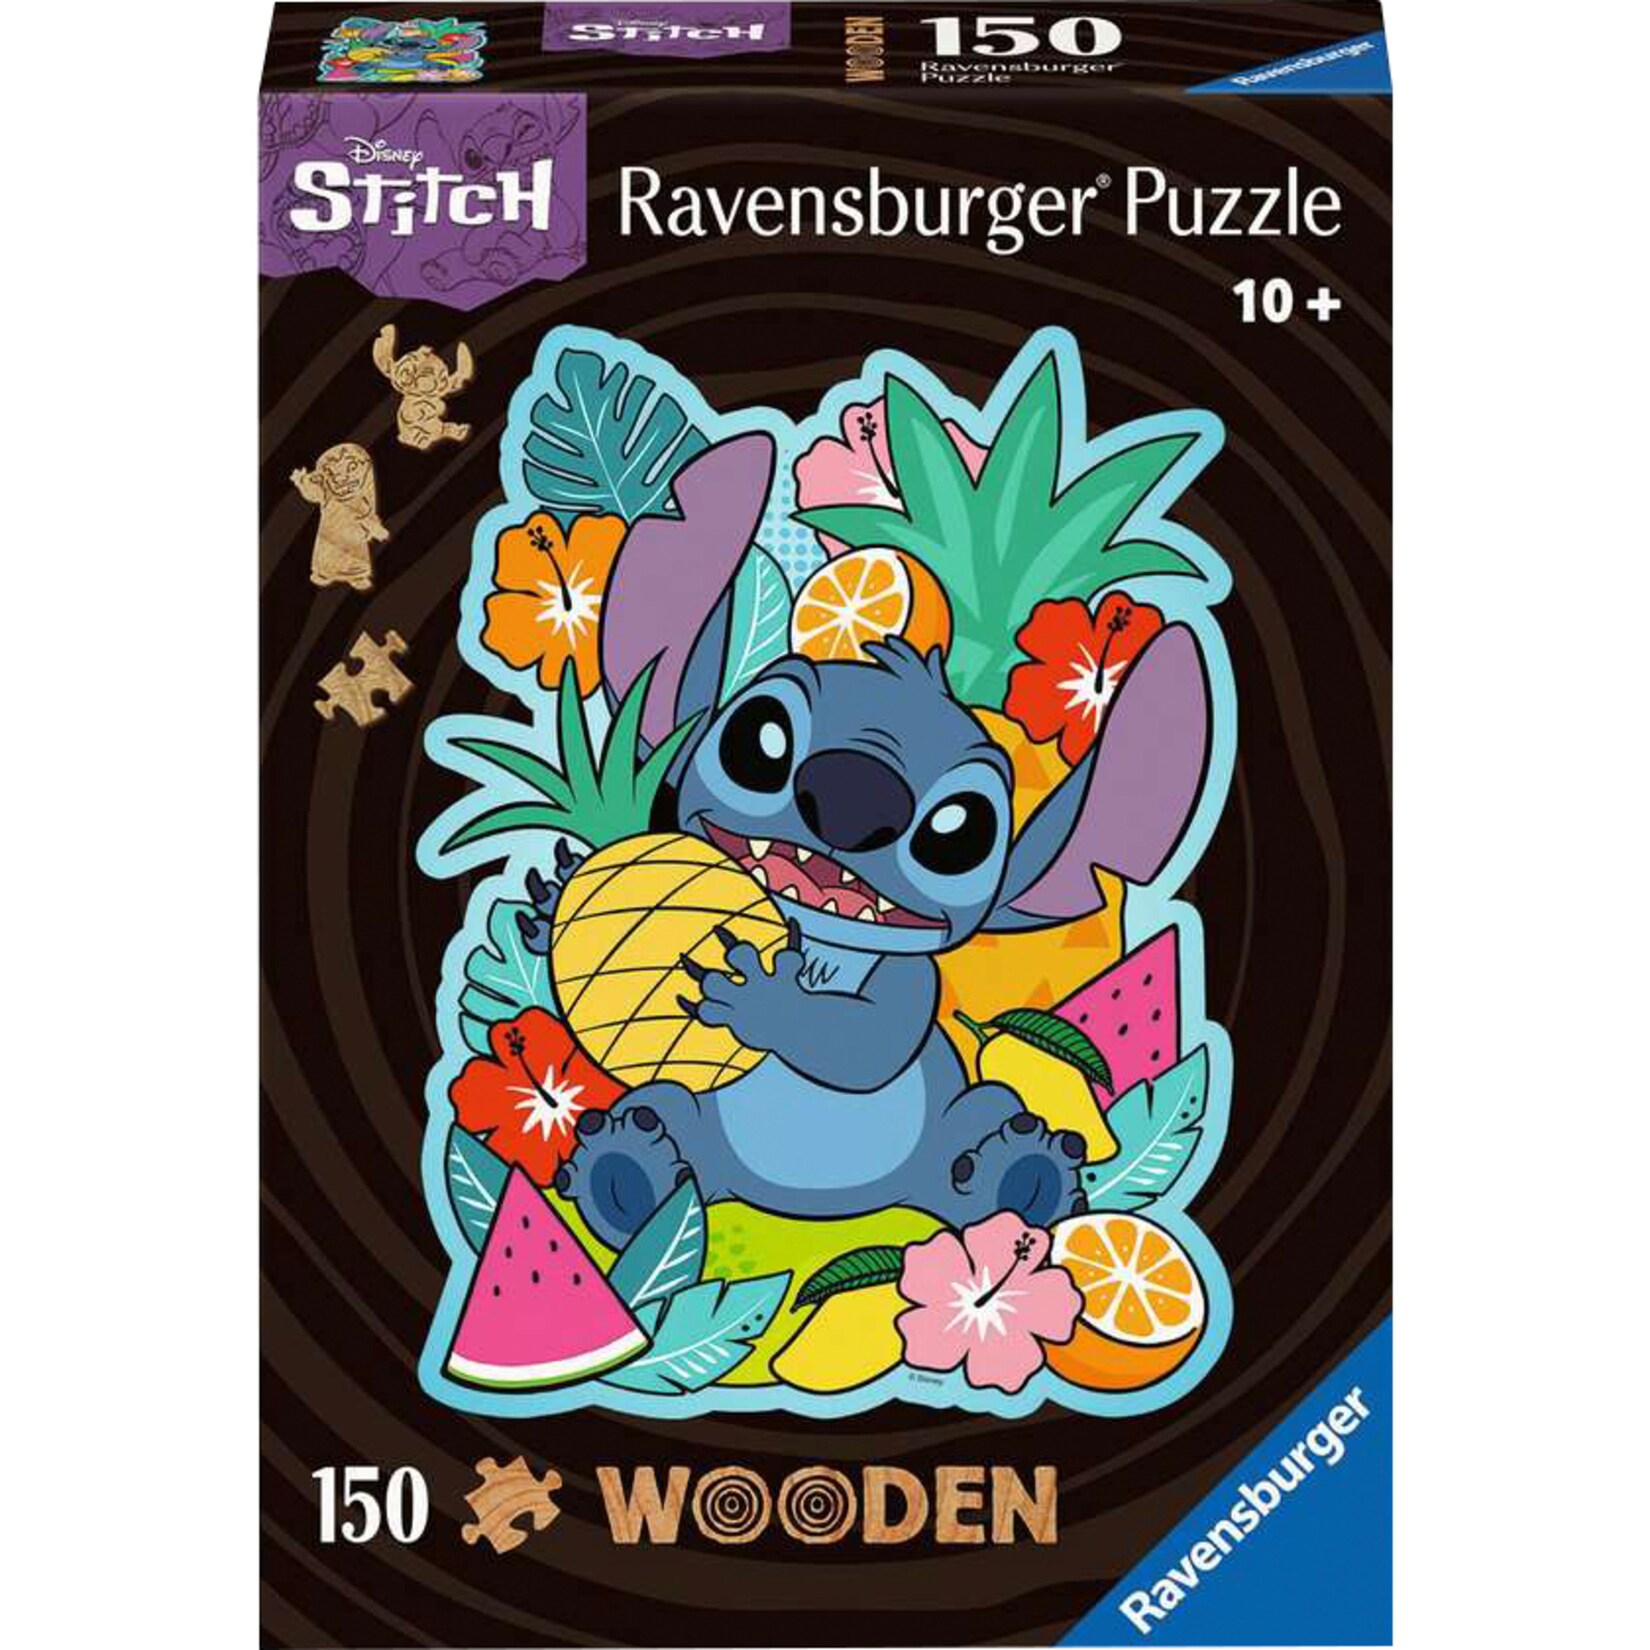 Ravensburger Puzzle Wooden Puzzle Disney Stitch